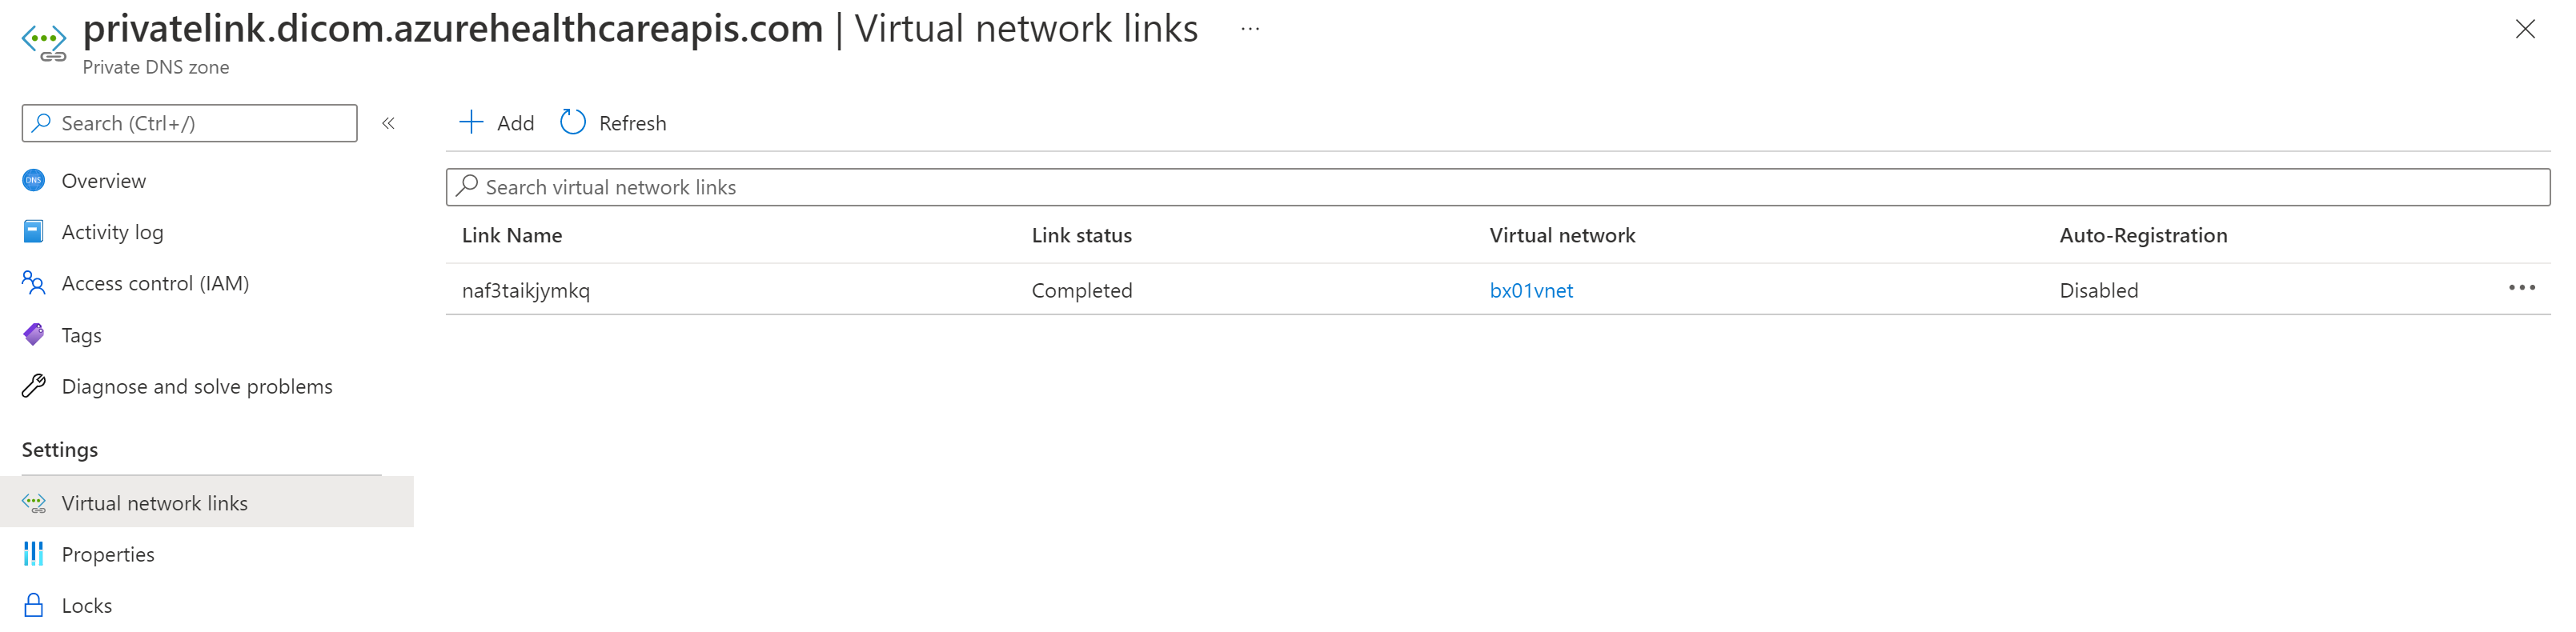 Snímek obrazovky s obrázkem DICOM pro virtuální síť Private Link